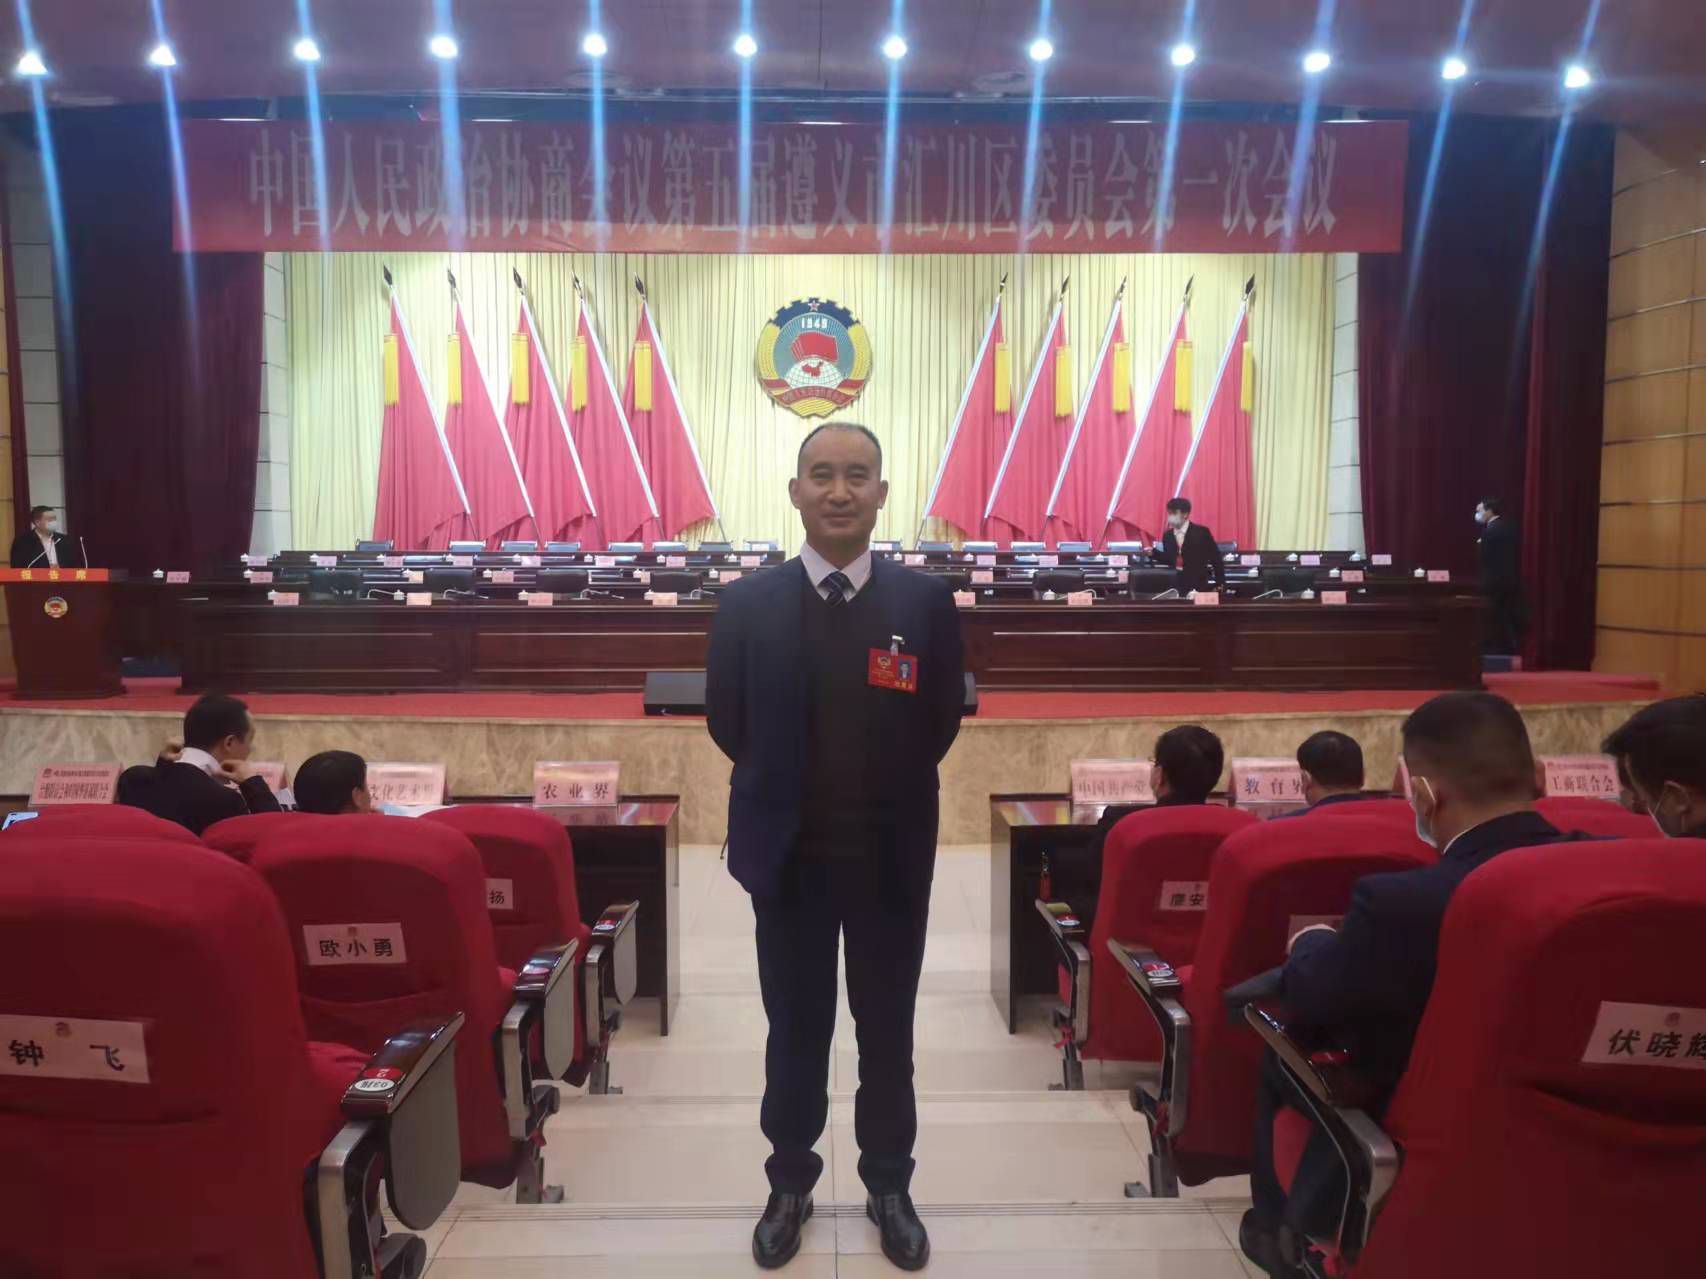 恭祝农民工律师汪伦当选政协委员